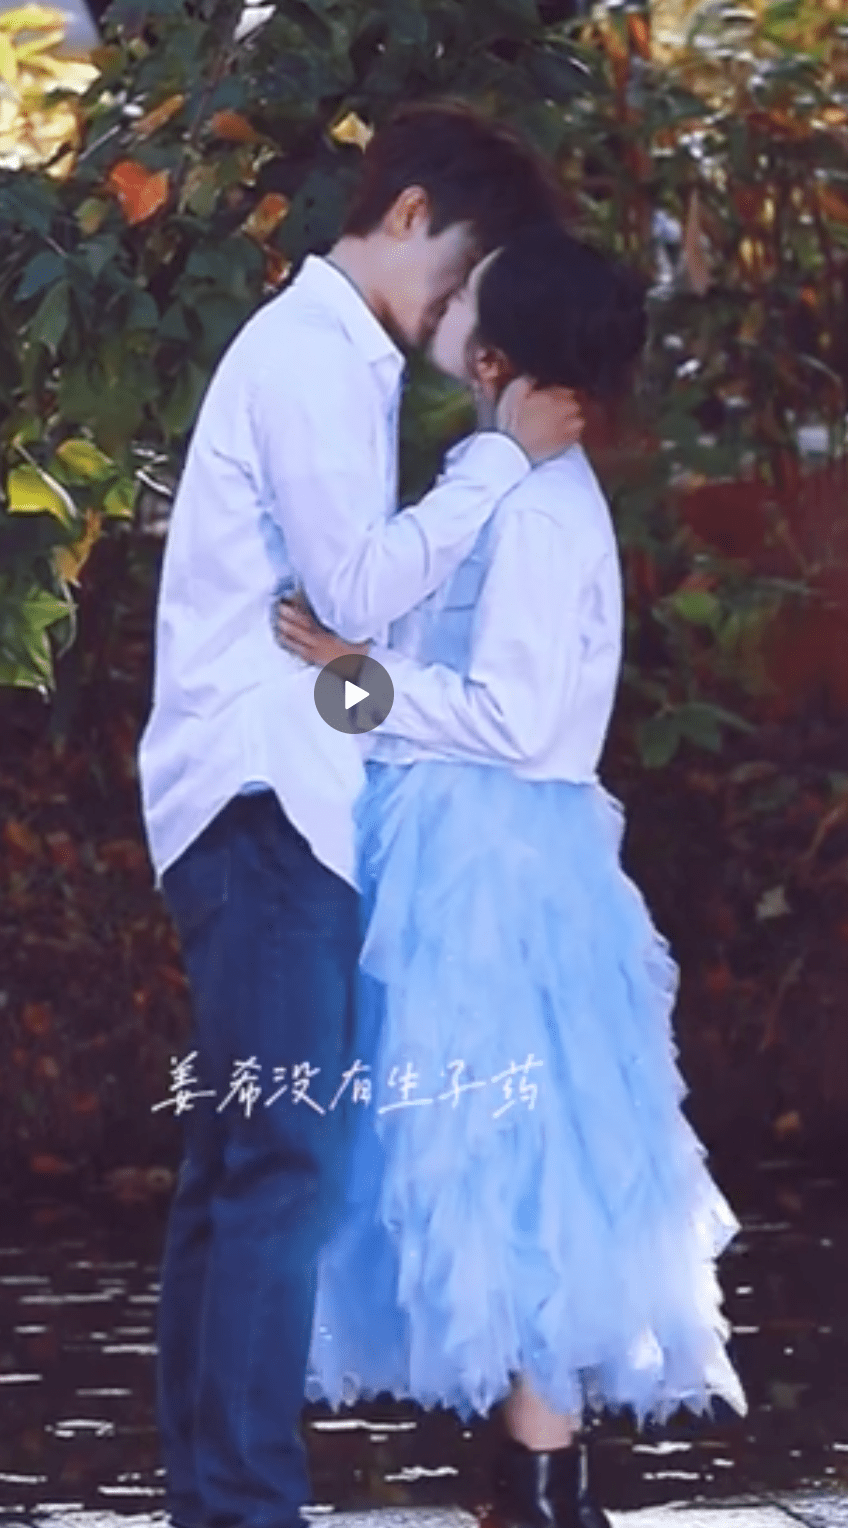 搜狐娱乐讯 11月23日,陈飞宇张婧仪正在拍摄的《打火机与公主裙》吻戏